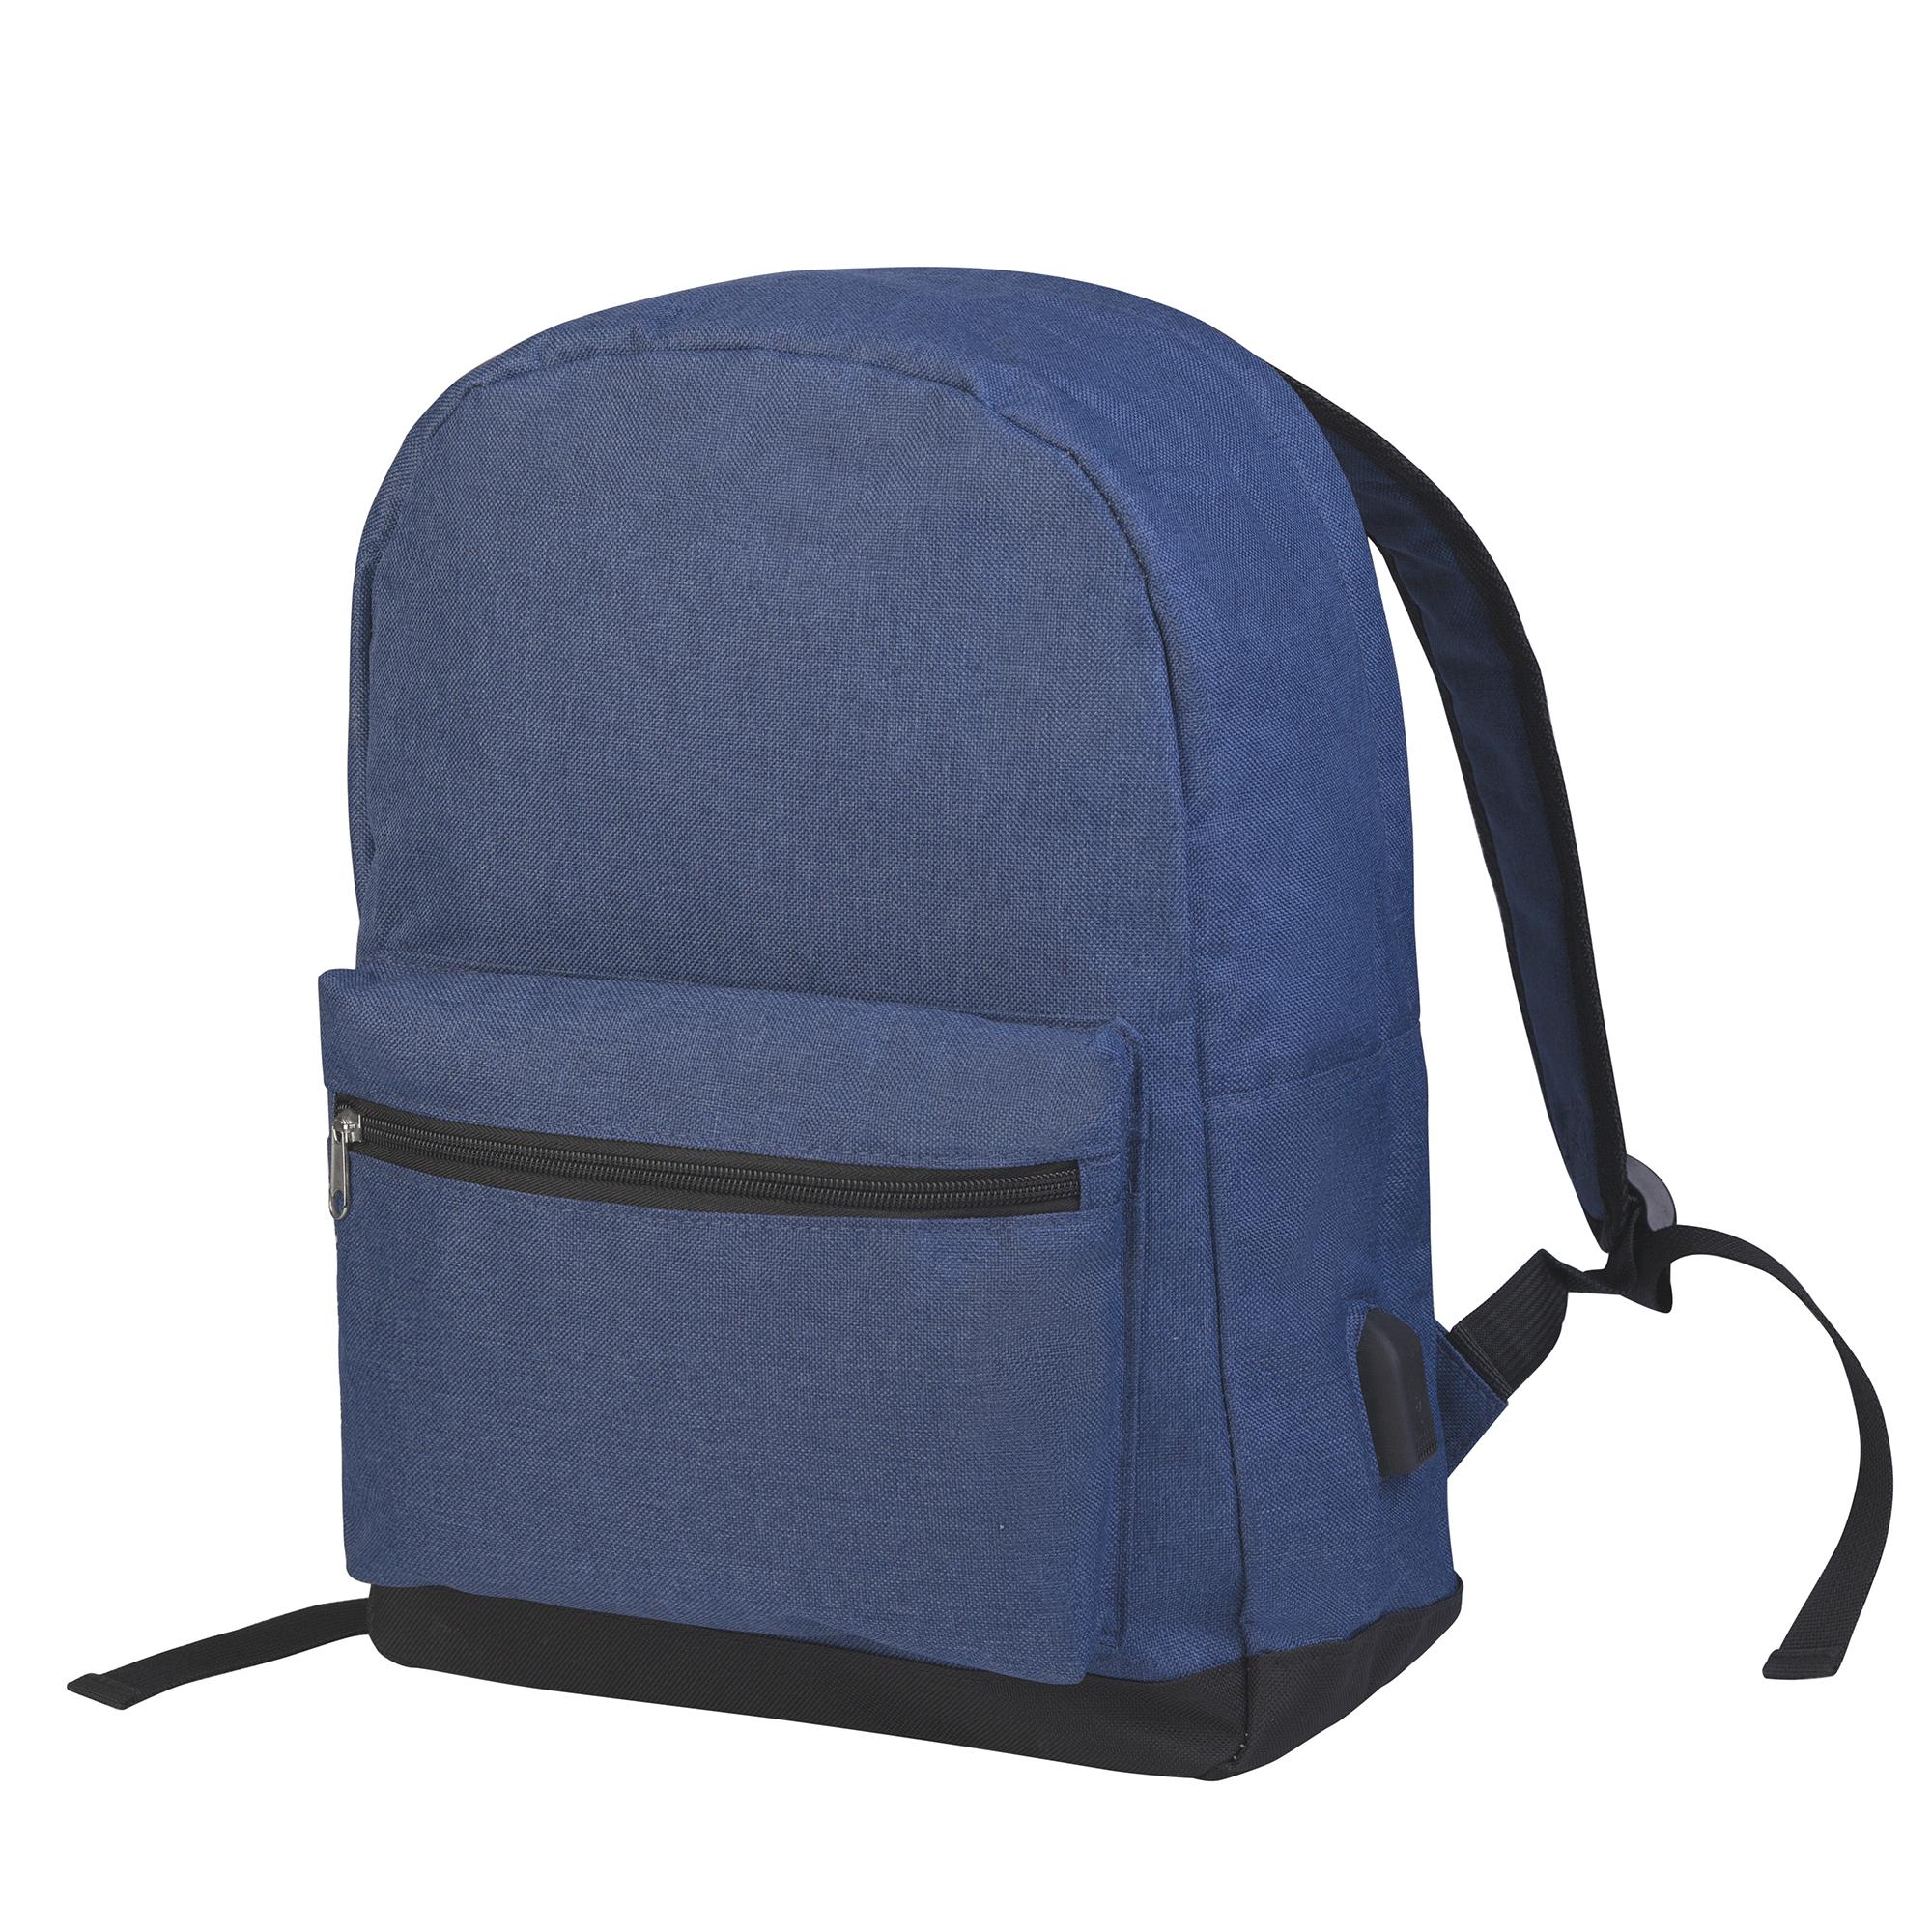 Рюкзак "Urban", цвет синий, фото 2